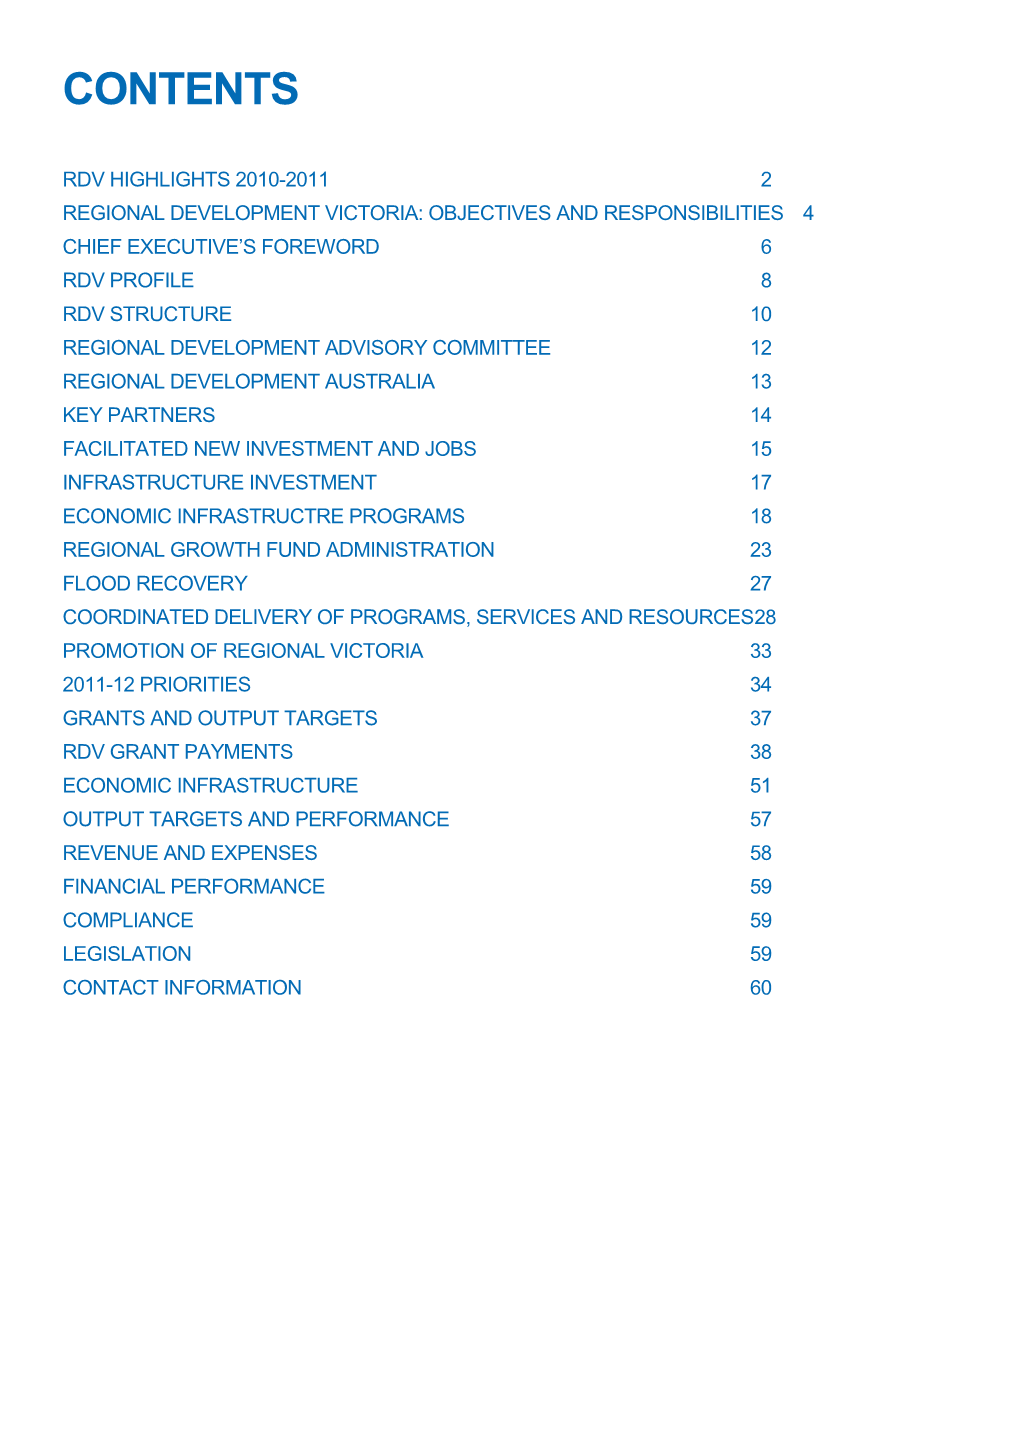 RDV Annual Report 2010-2011